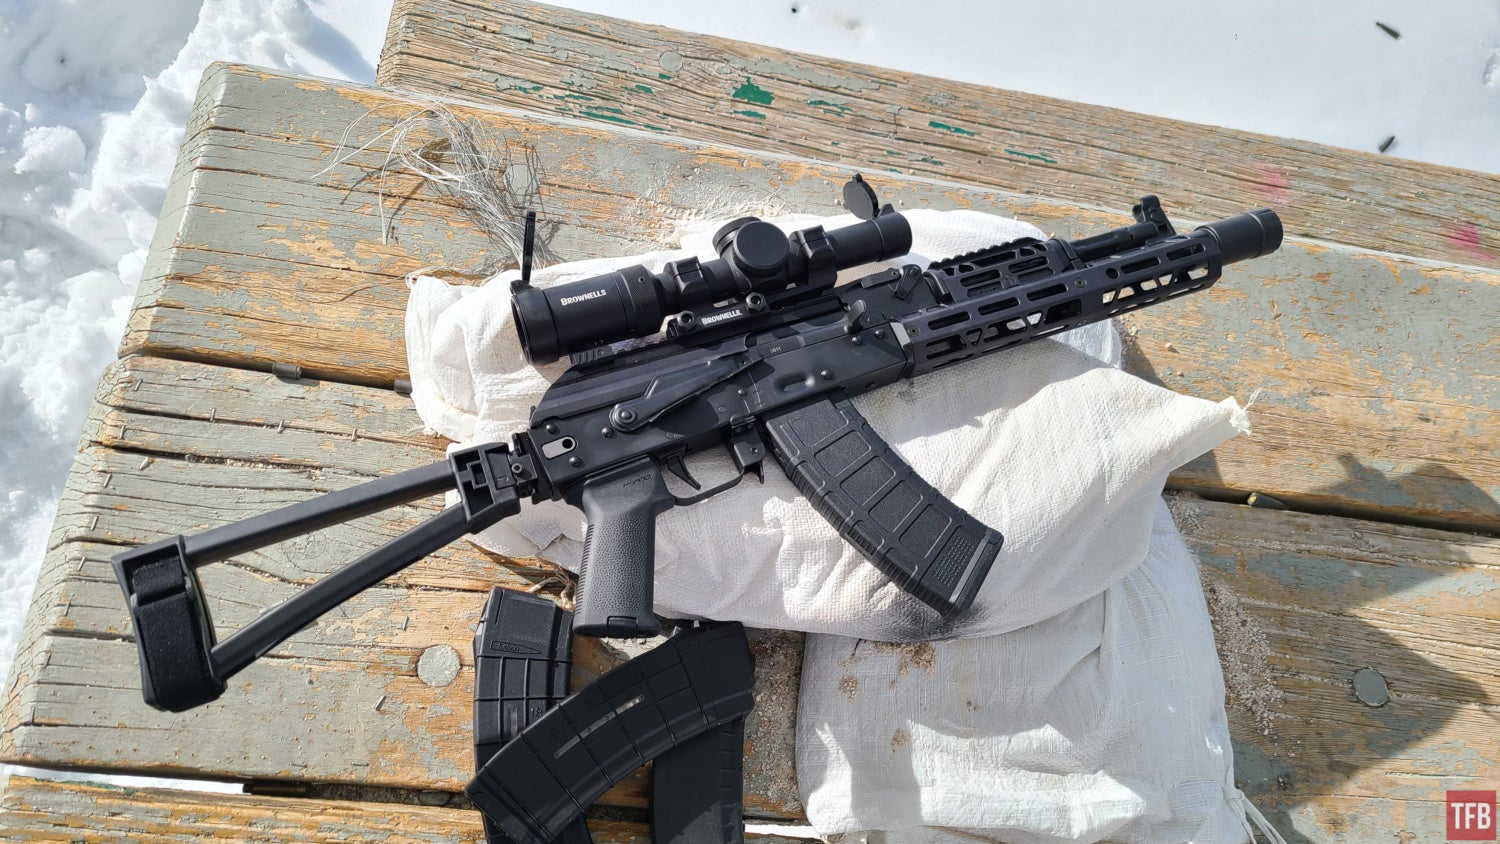 TFB Review: Palmetto State Armory AK-105 - An Abortive Part 1